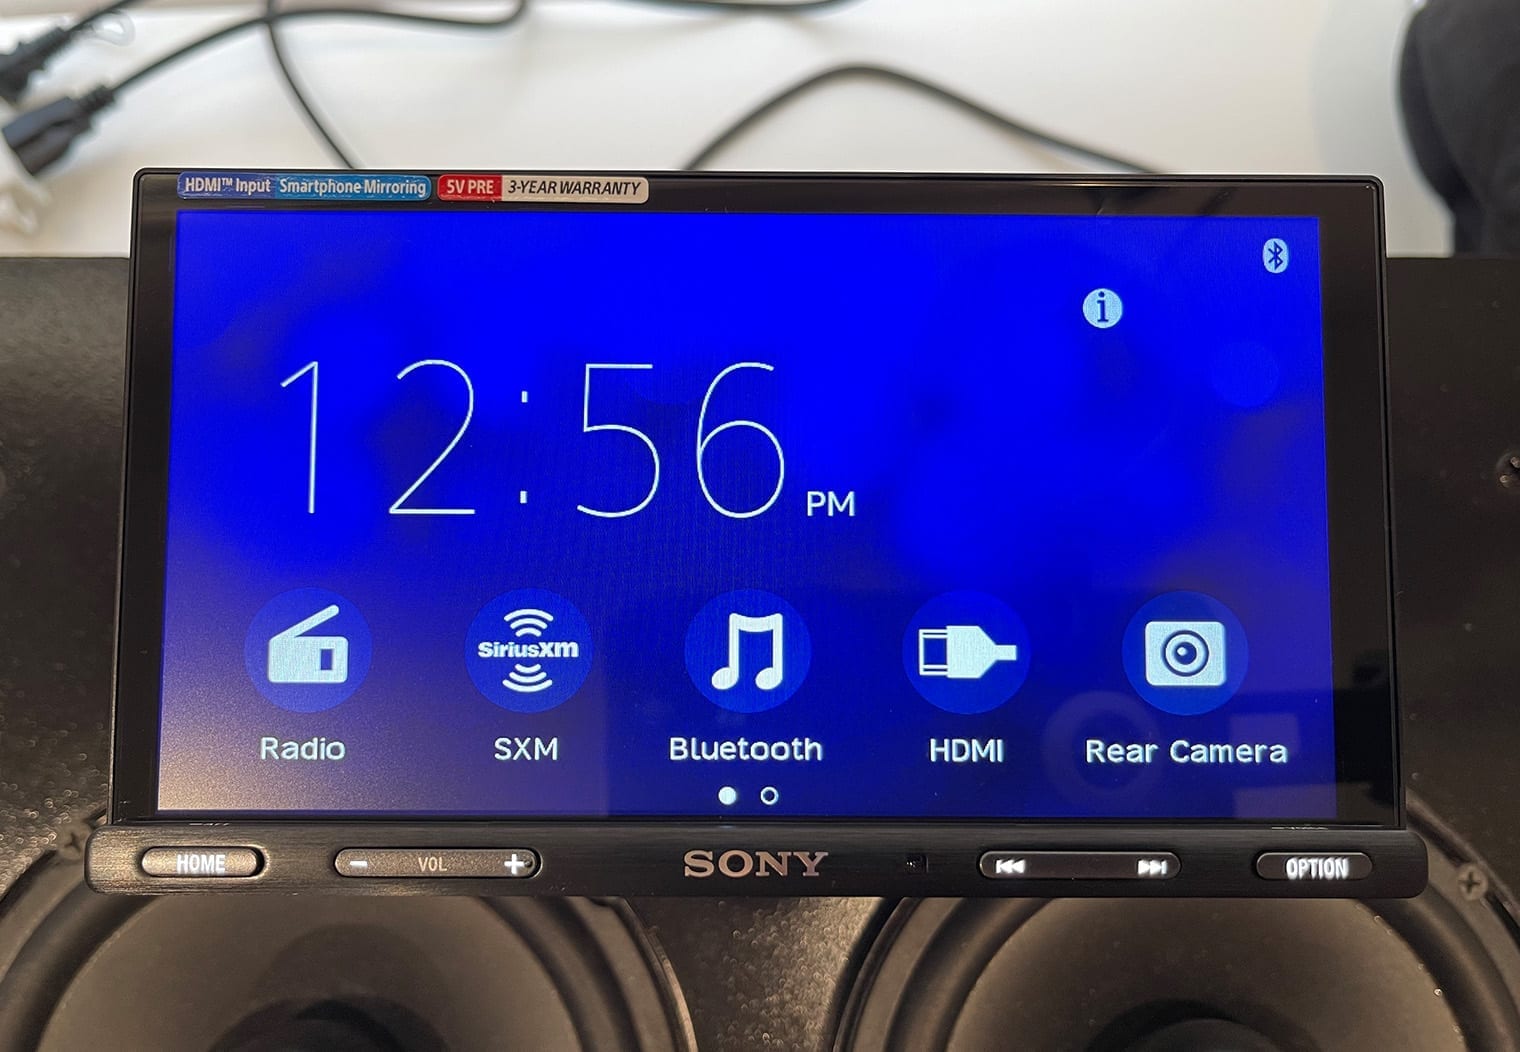 Sony XAV-AX5600 homescreen